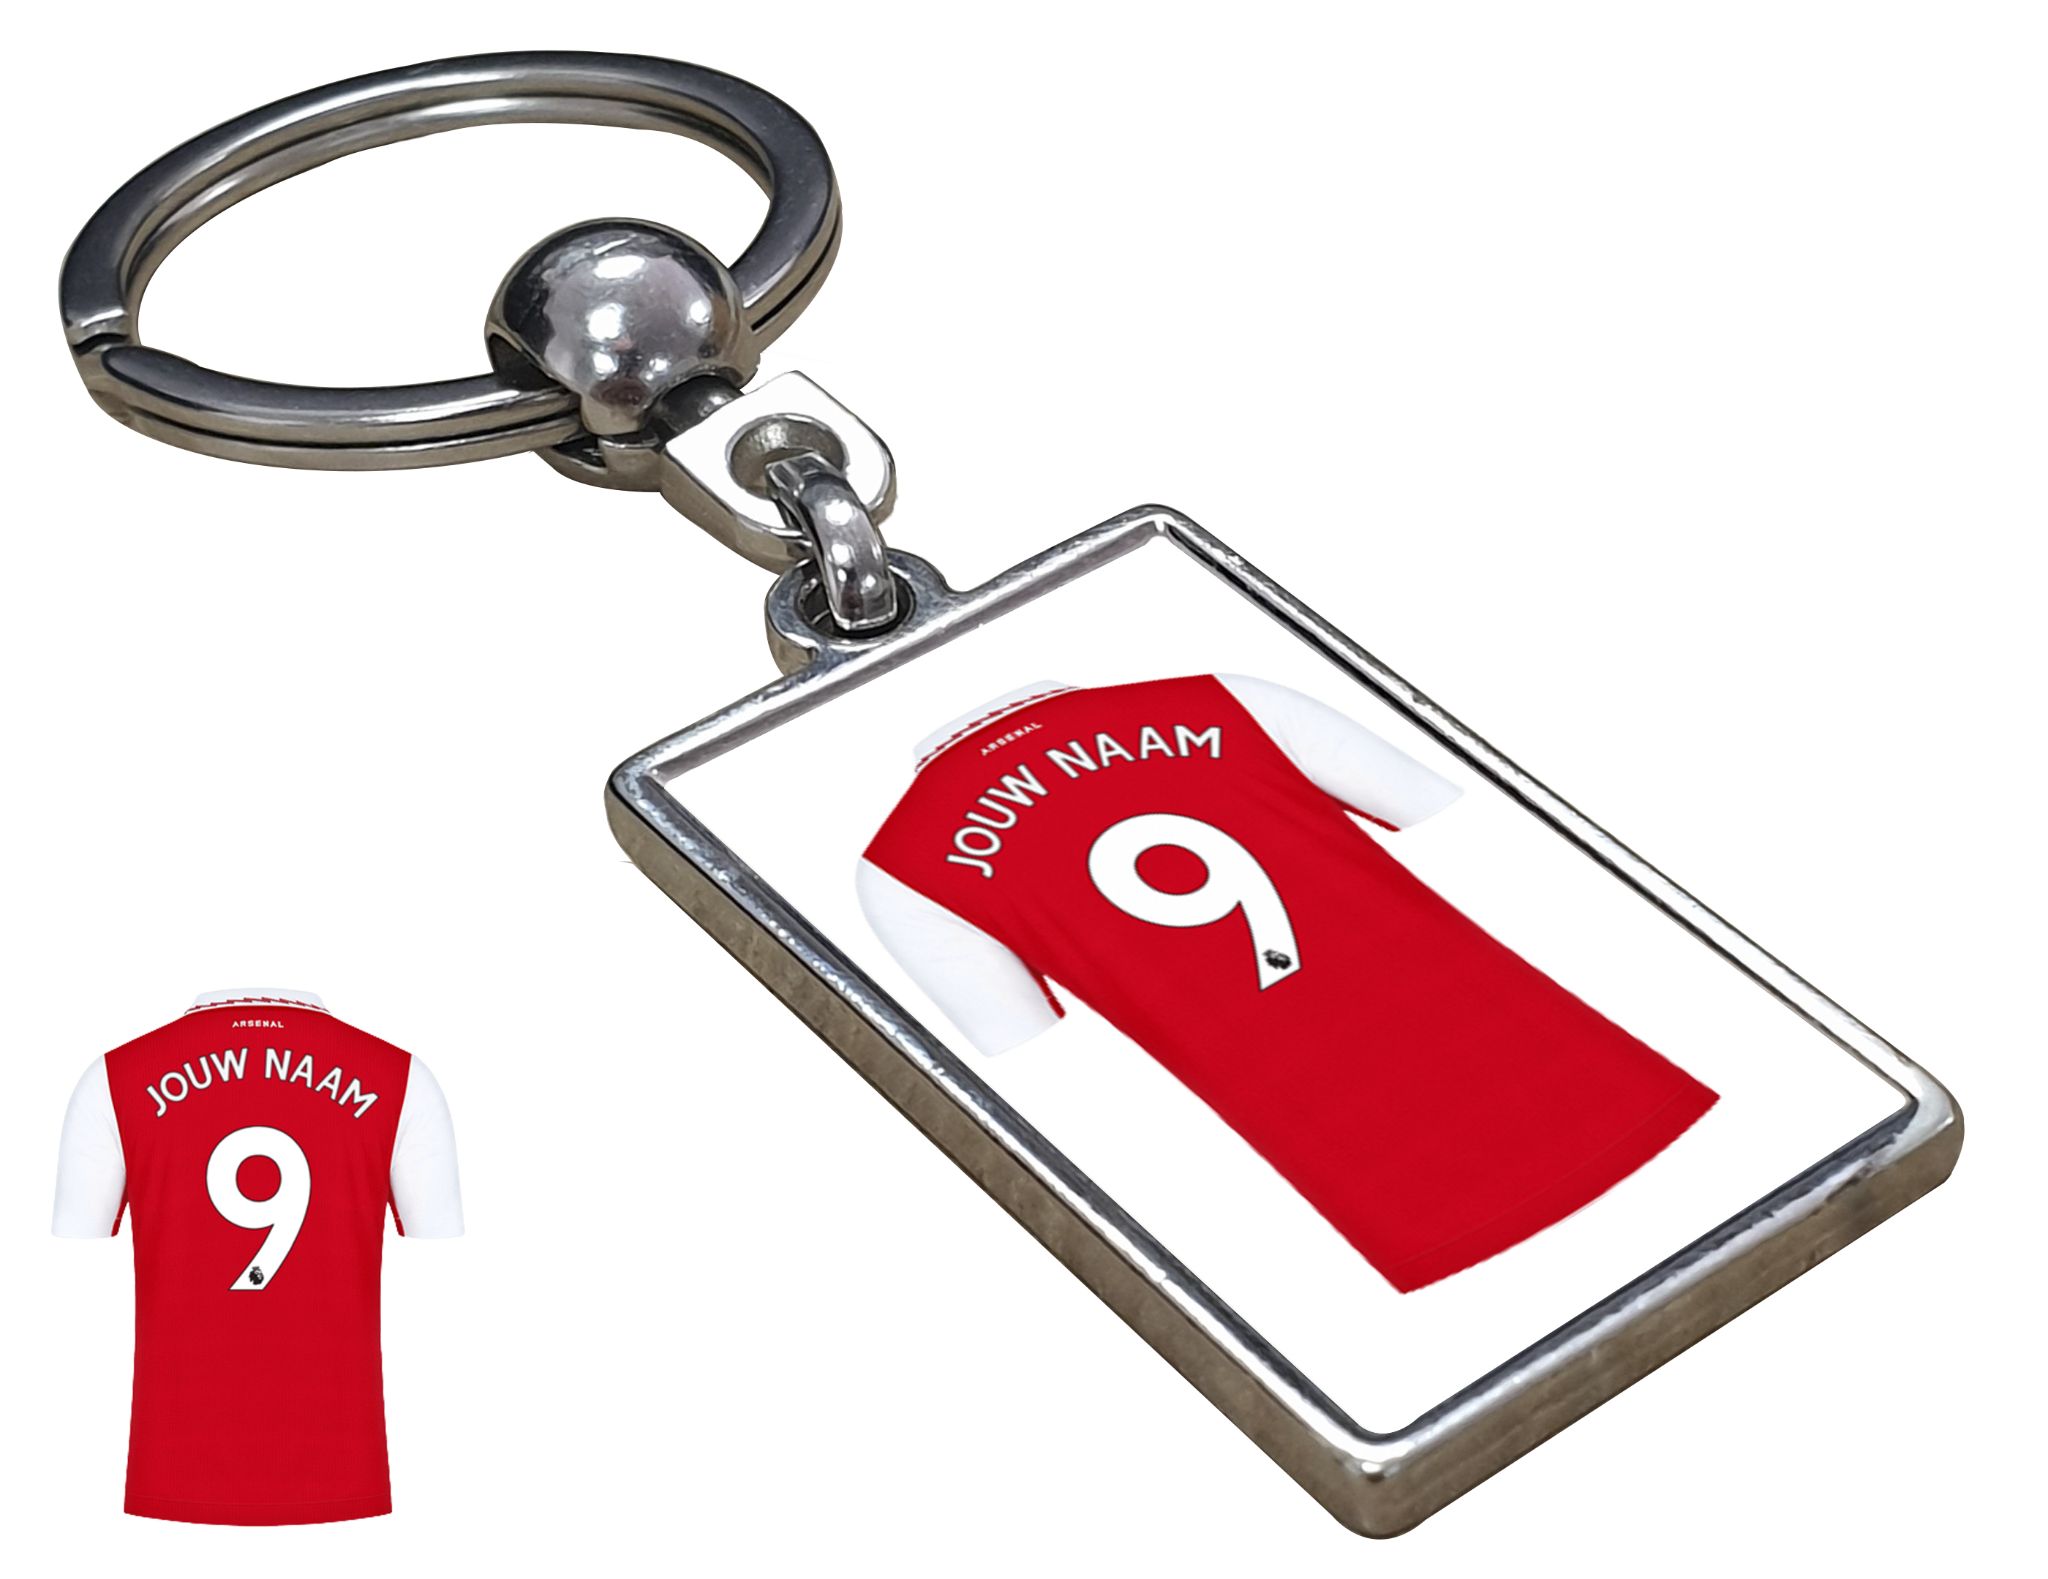 Arsenal Shirt met Jouw Naam - Seizoen 22/23 - Gepersonaliseerde Sleutelhanger met Jouw Naam en Nummer